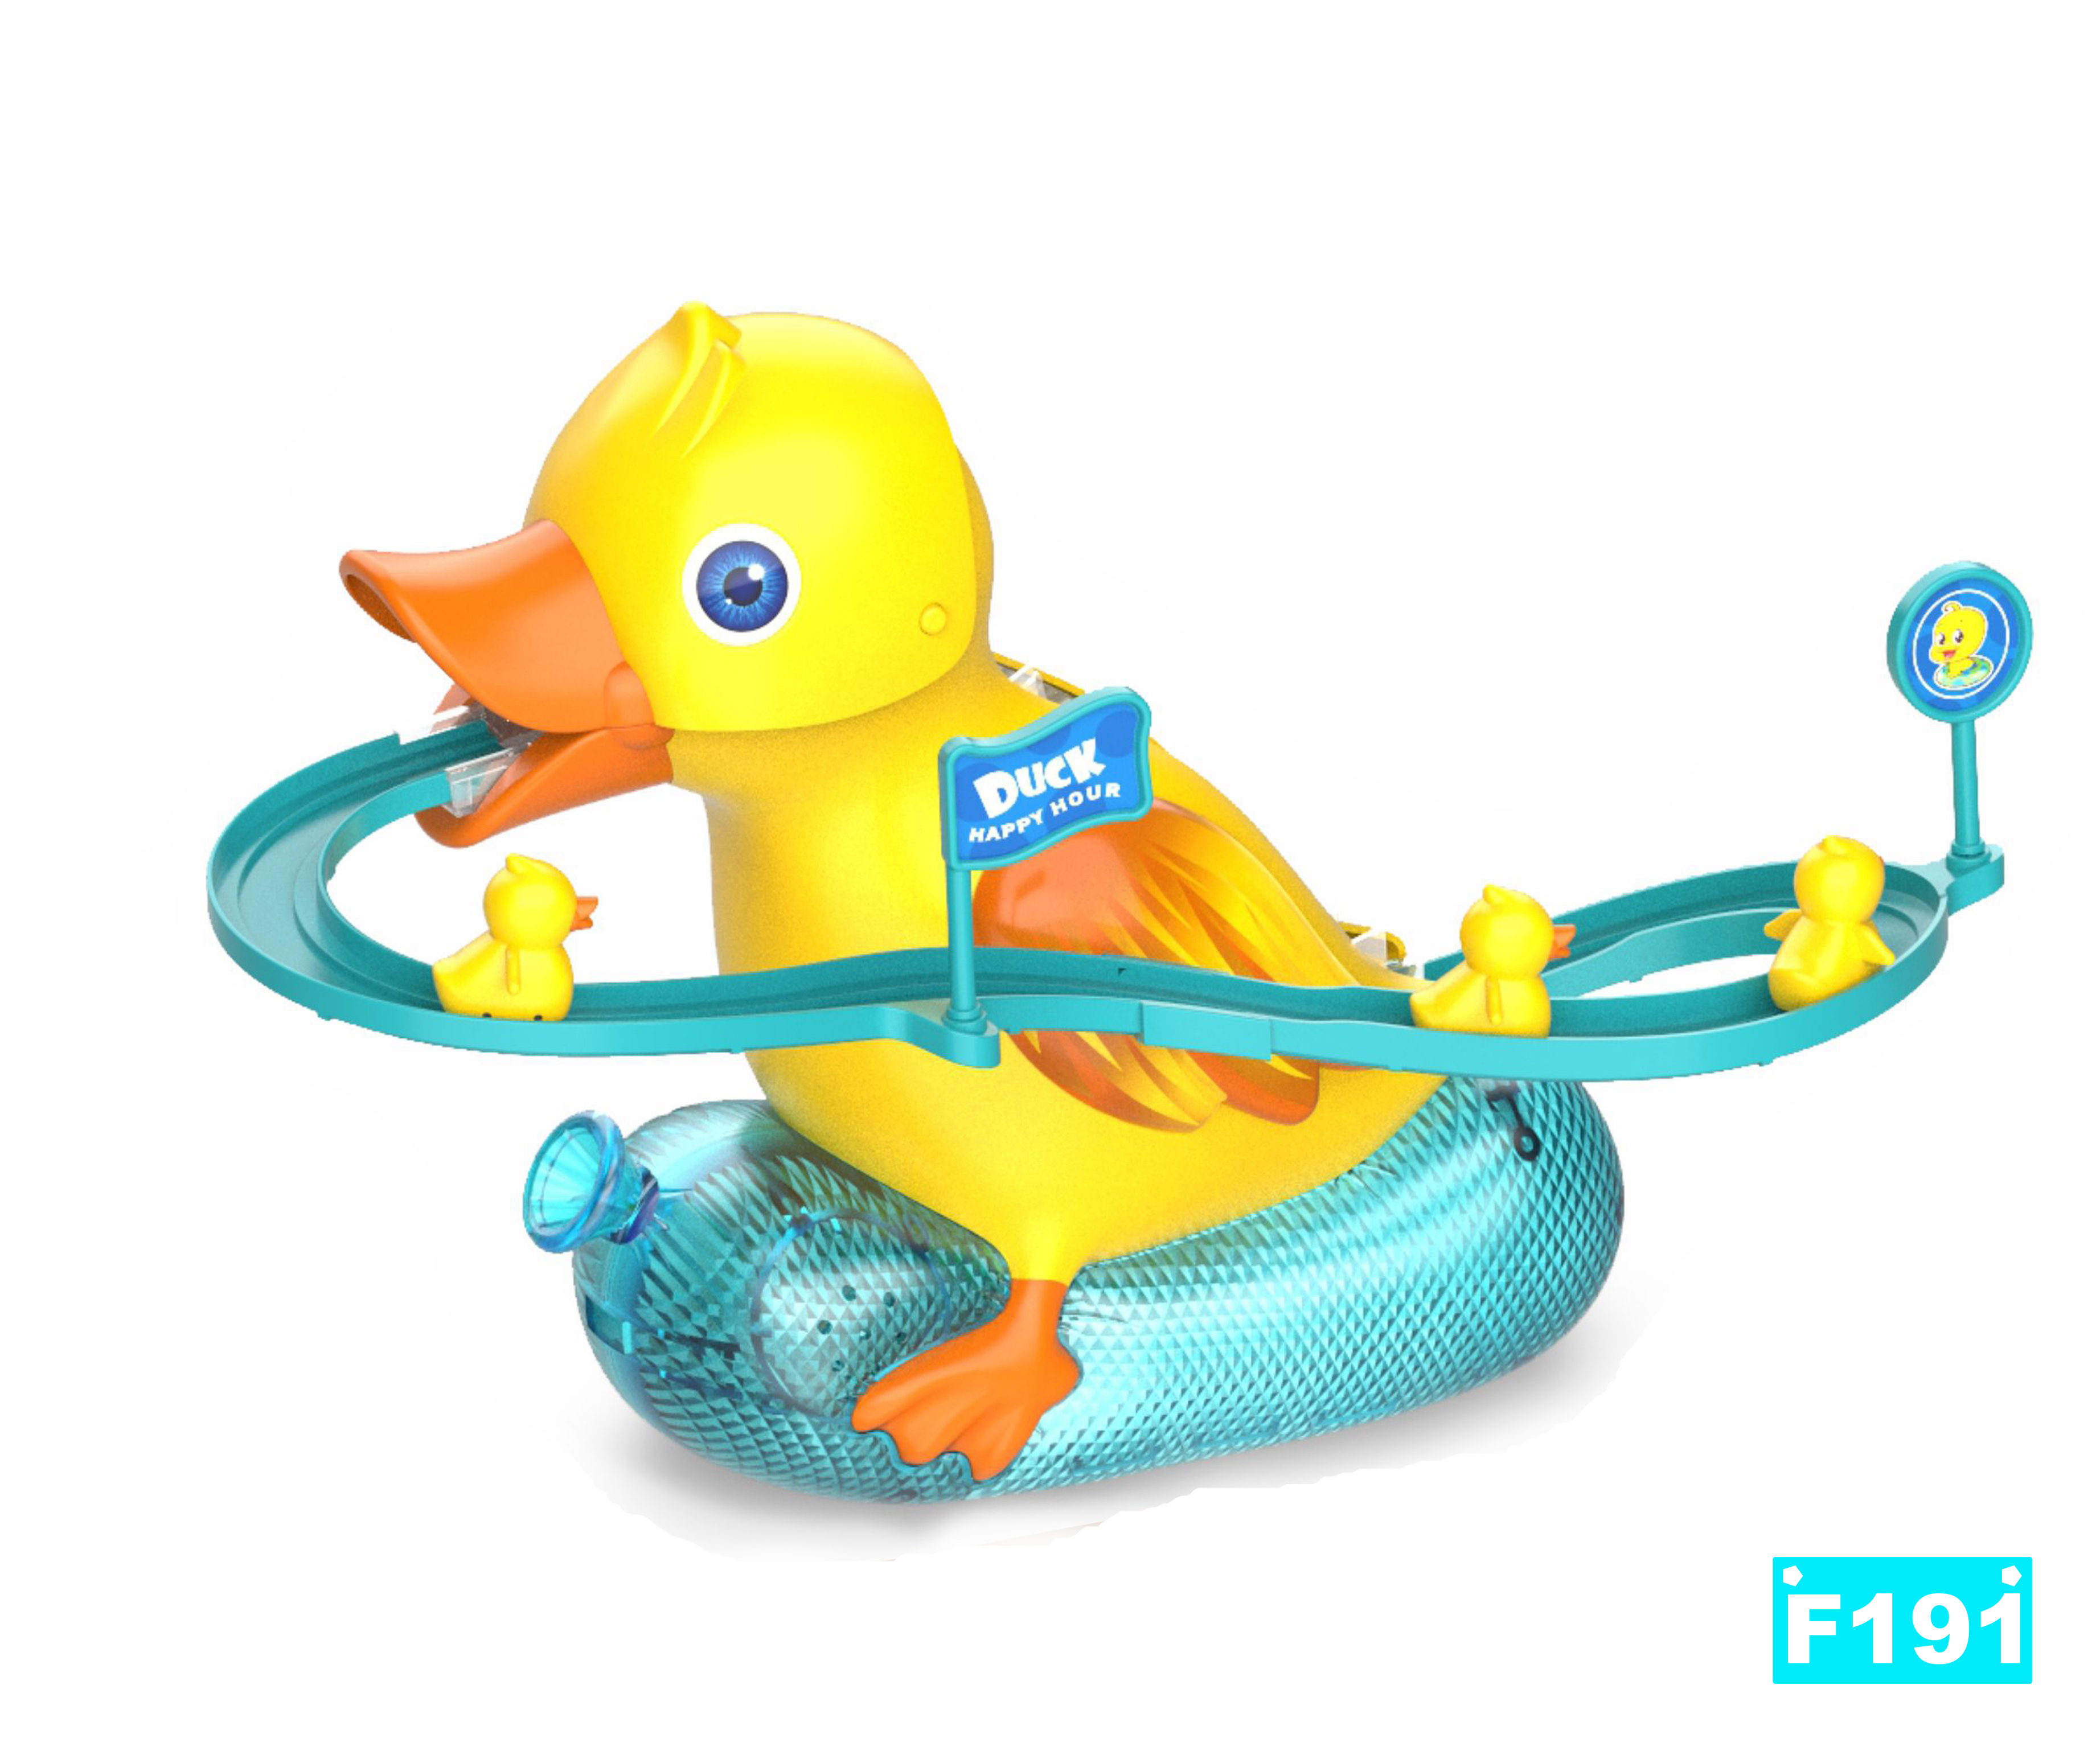 小鸭子爬楼梯 鸭子滑梯轨道玩具 外贸玩具 电动玩具 智能玩具 TOYS 小黄鸭玩具 JUGUETE细节图